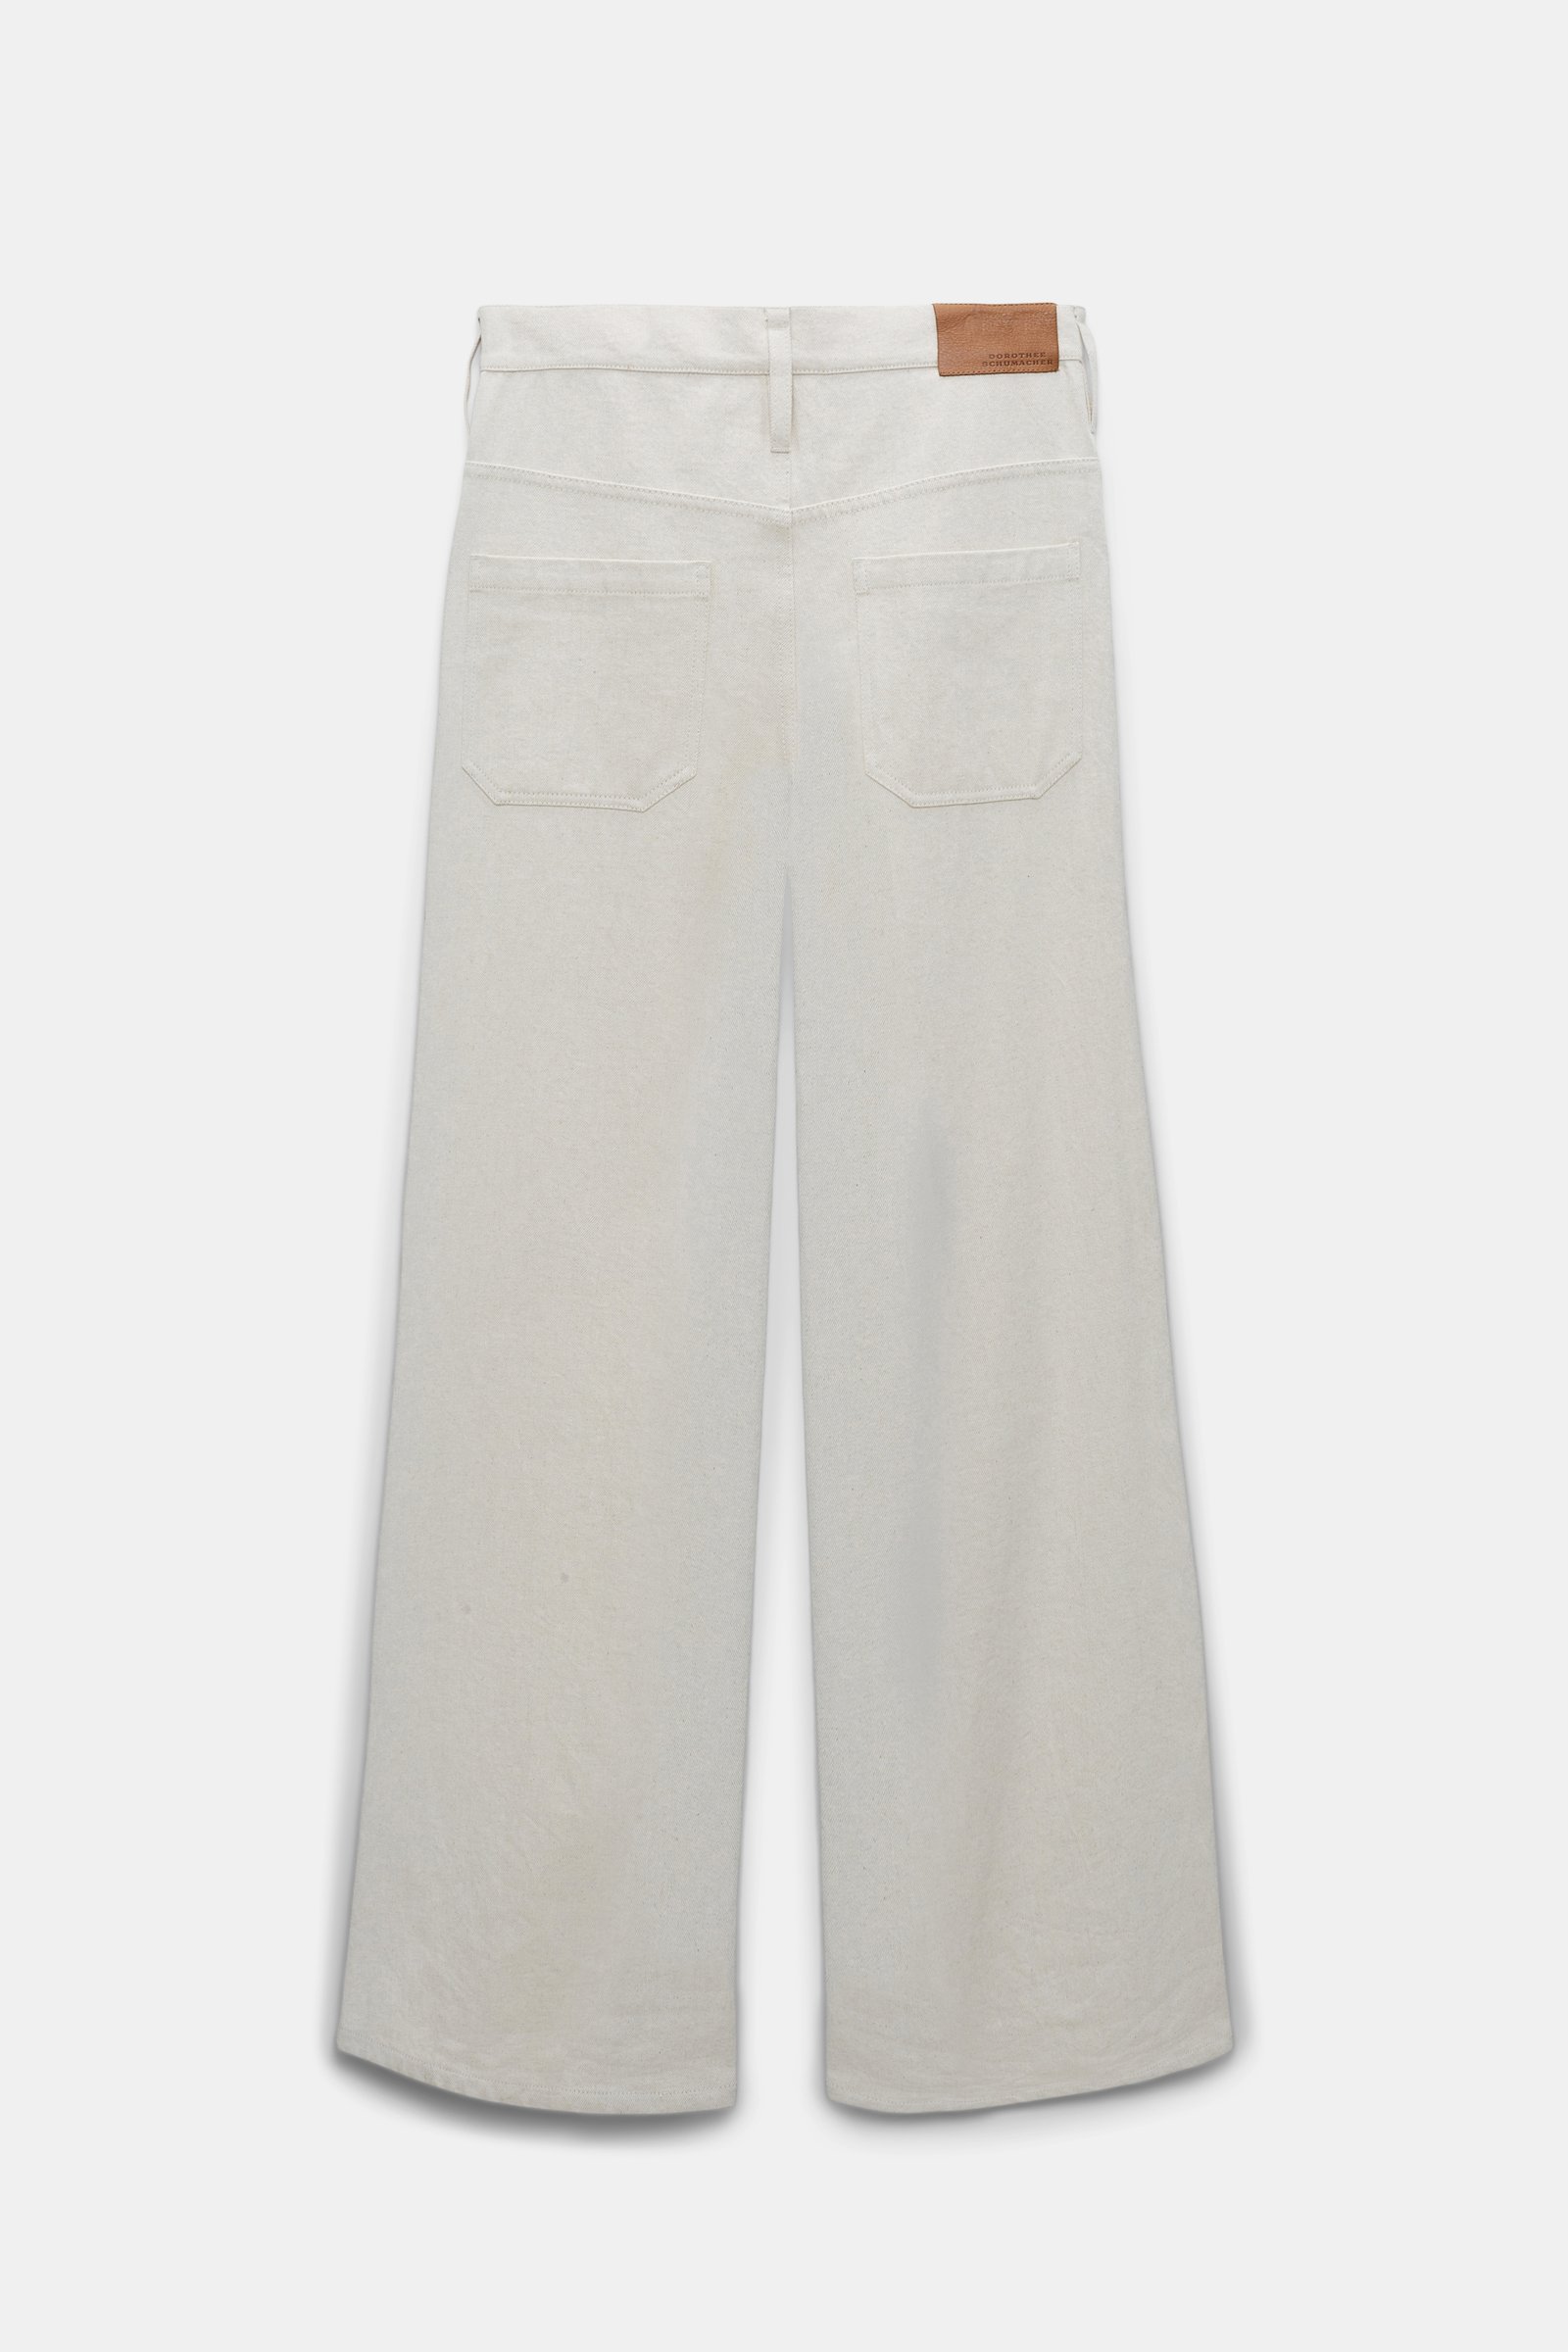 Dorothee Schumacher Relaxed cotton denim-linen pants ecru